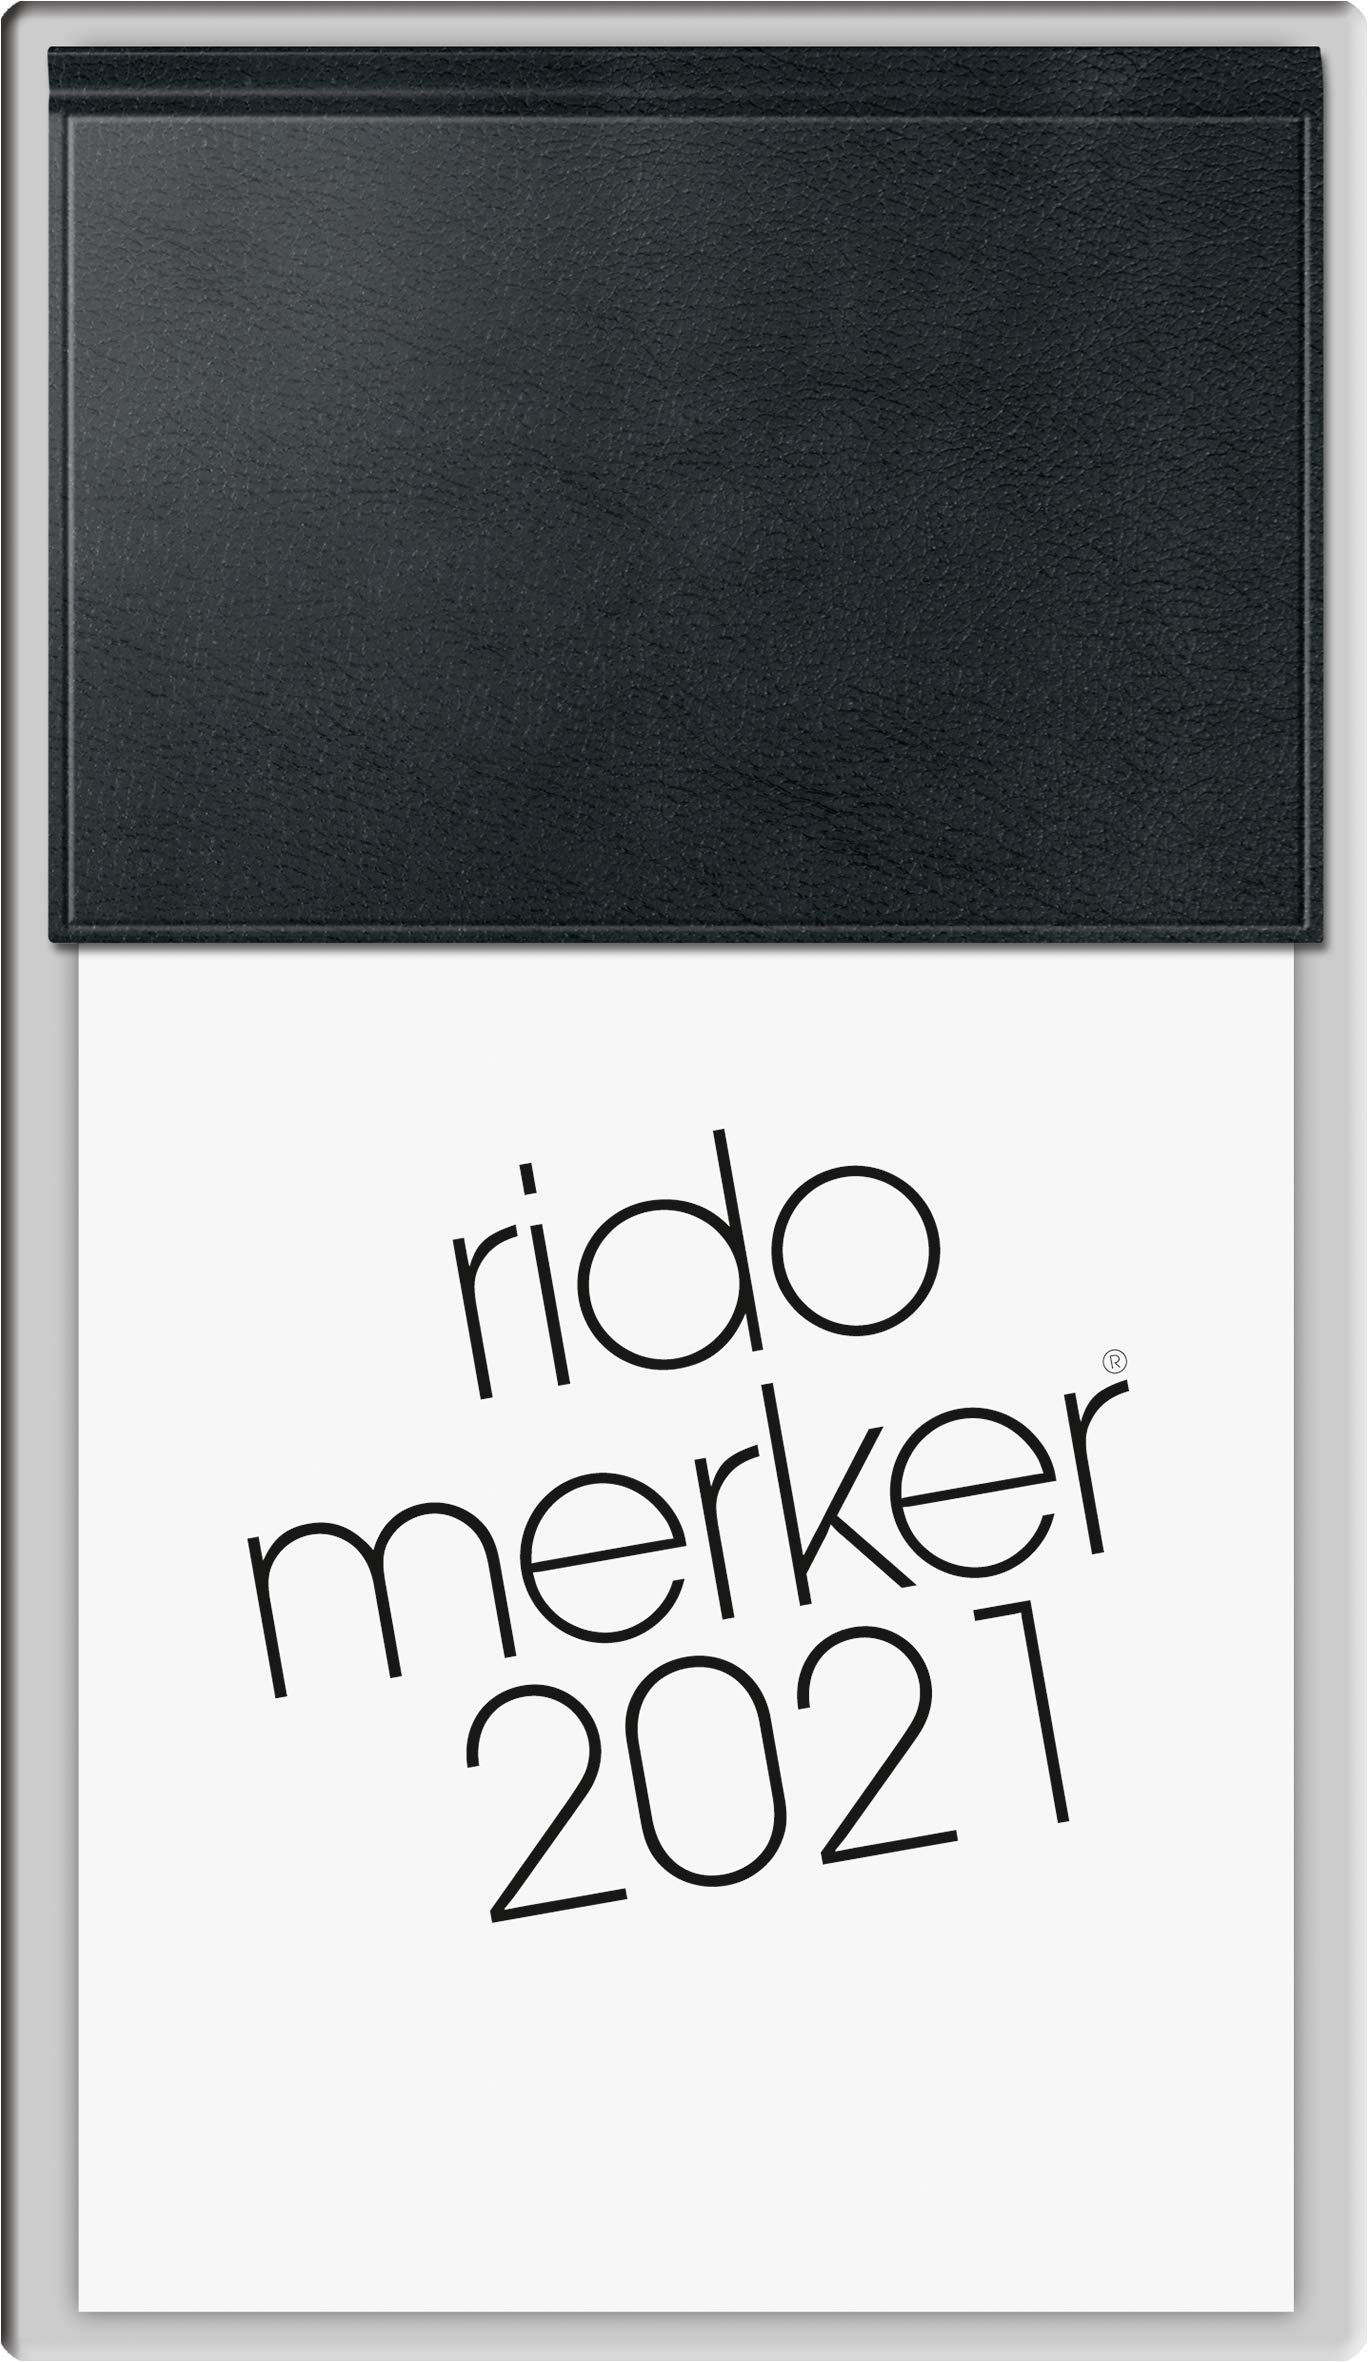 rido/idé 7035083901 Tischkalender Merker, 1 Seite = 1 Tag, 108 x 201 mm, Kunststoff-Einband Skivertex schwarz, Kalendarium 2021